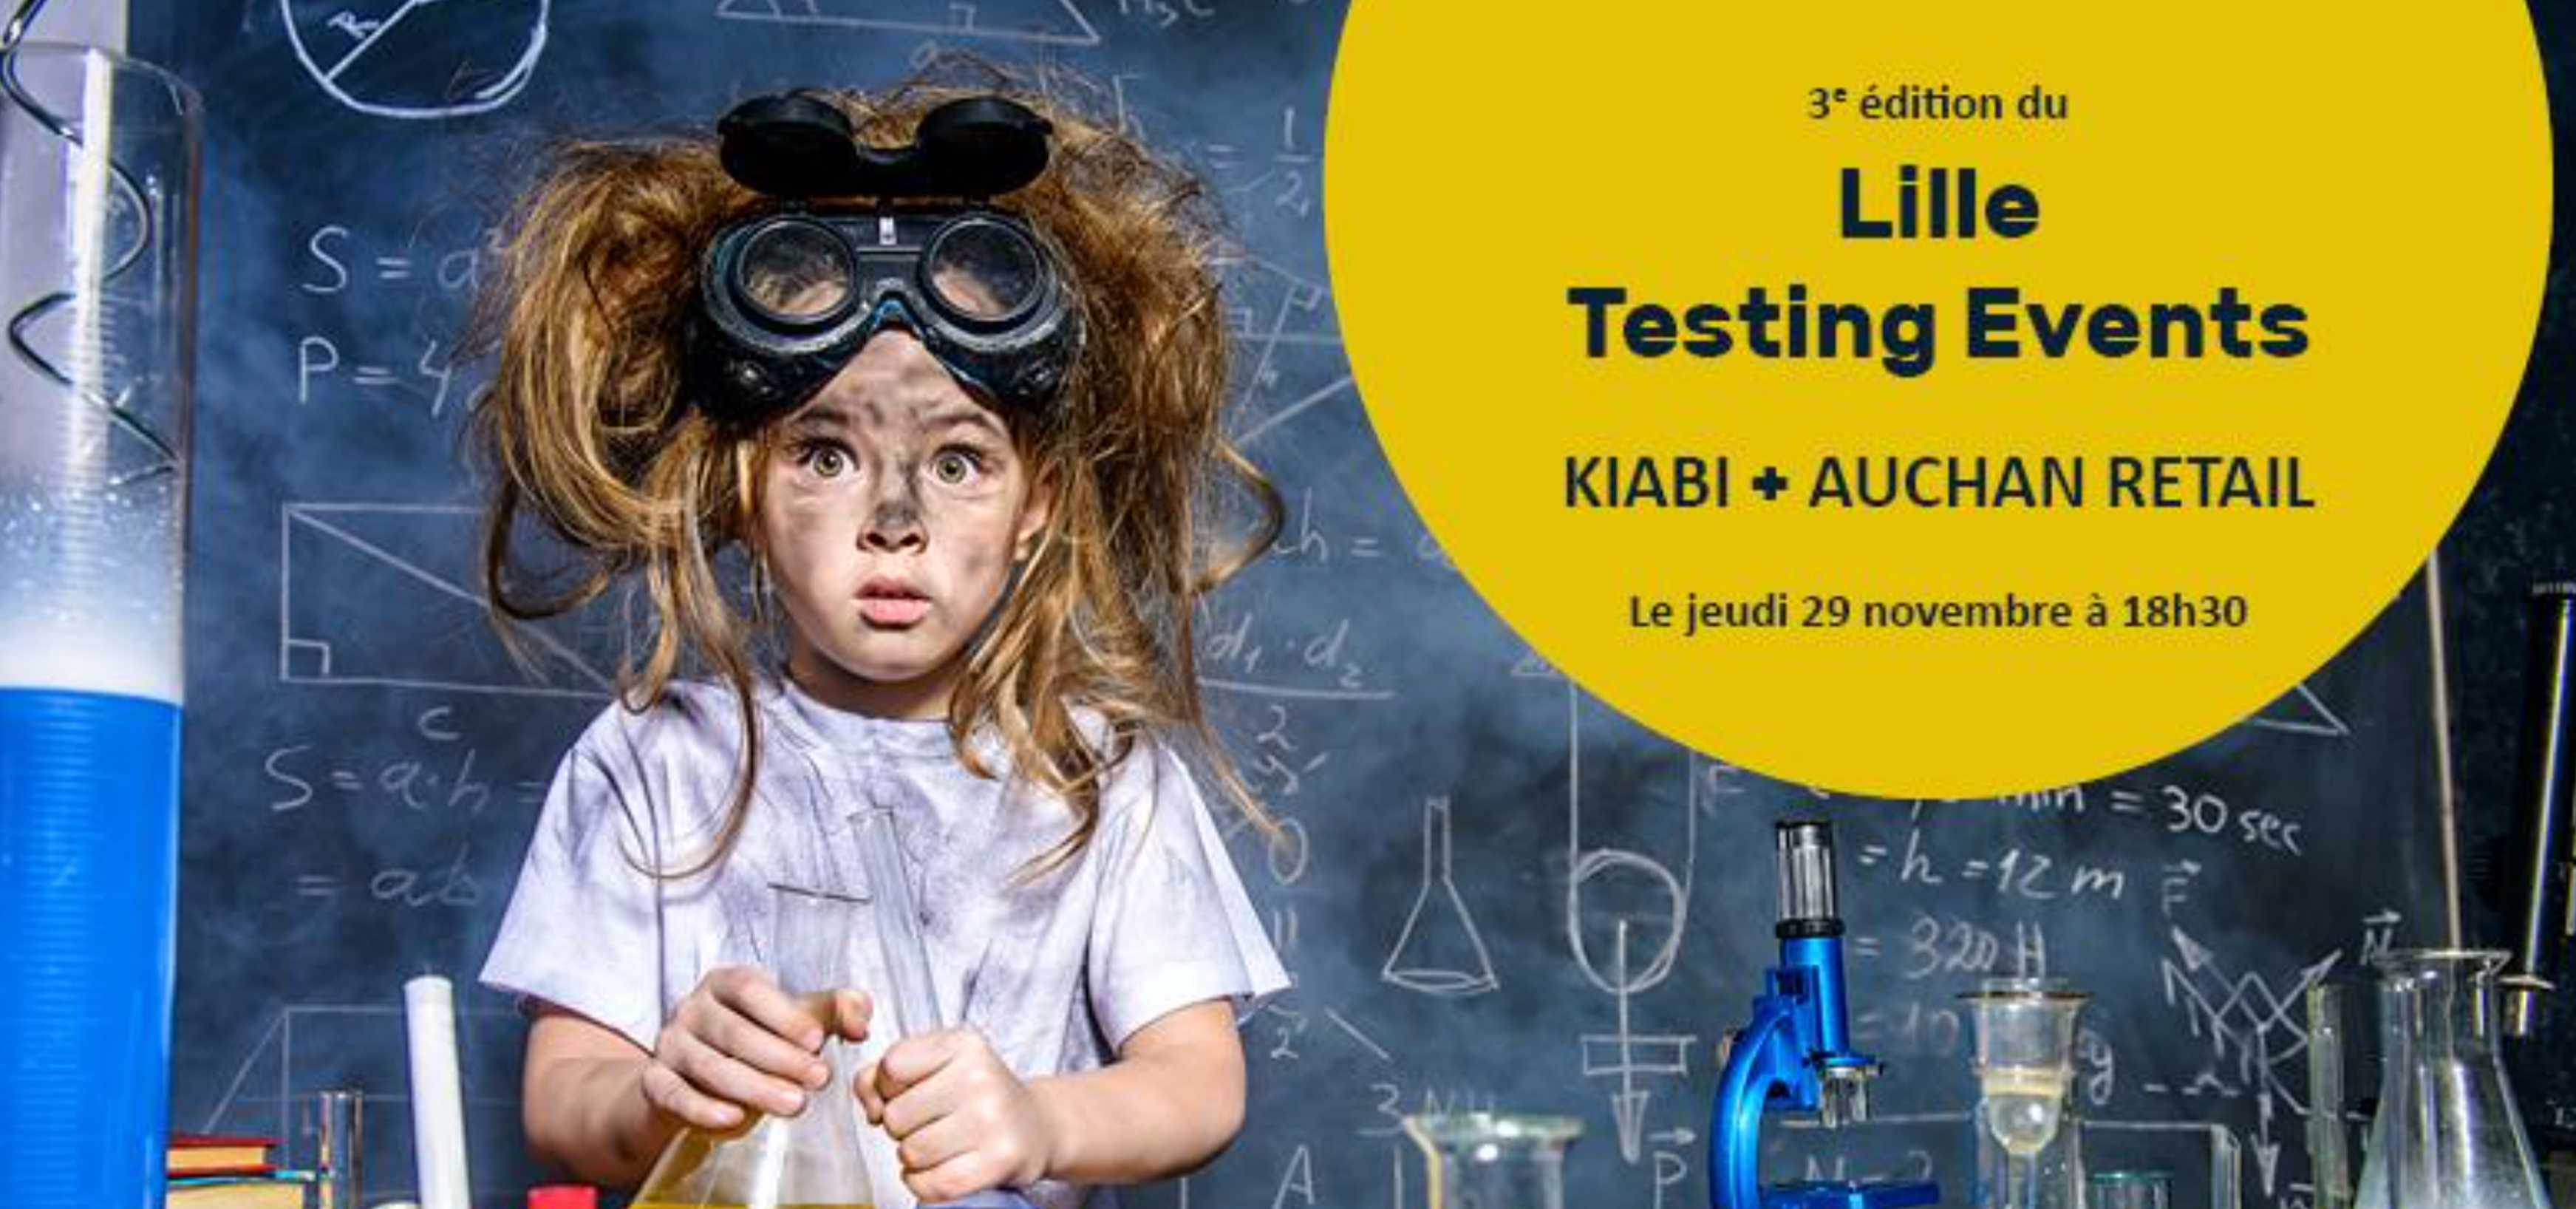 Lille Testing Event 3ème édition, Auchan Retail et Kiabi